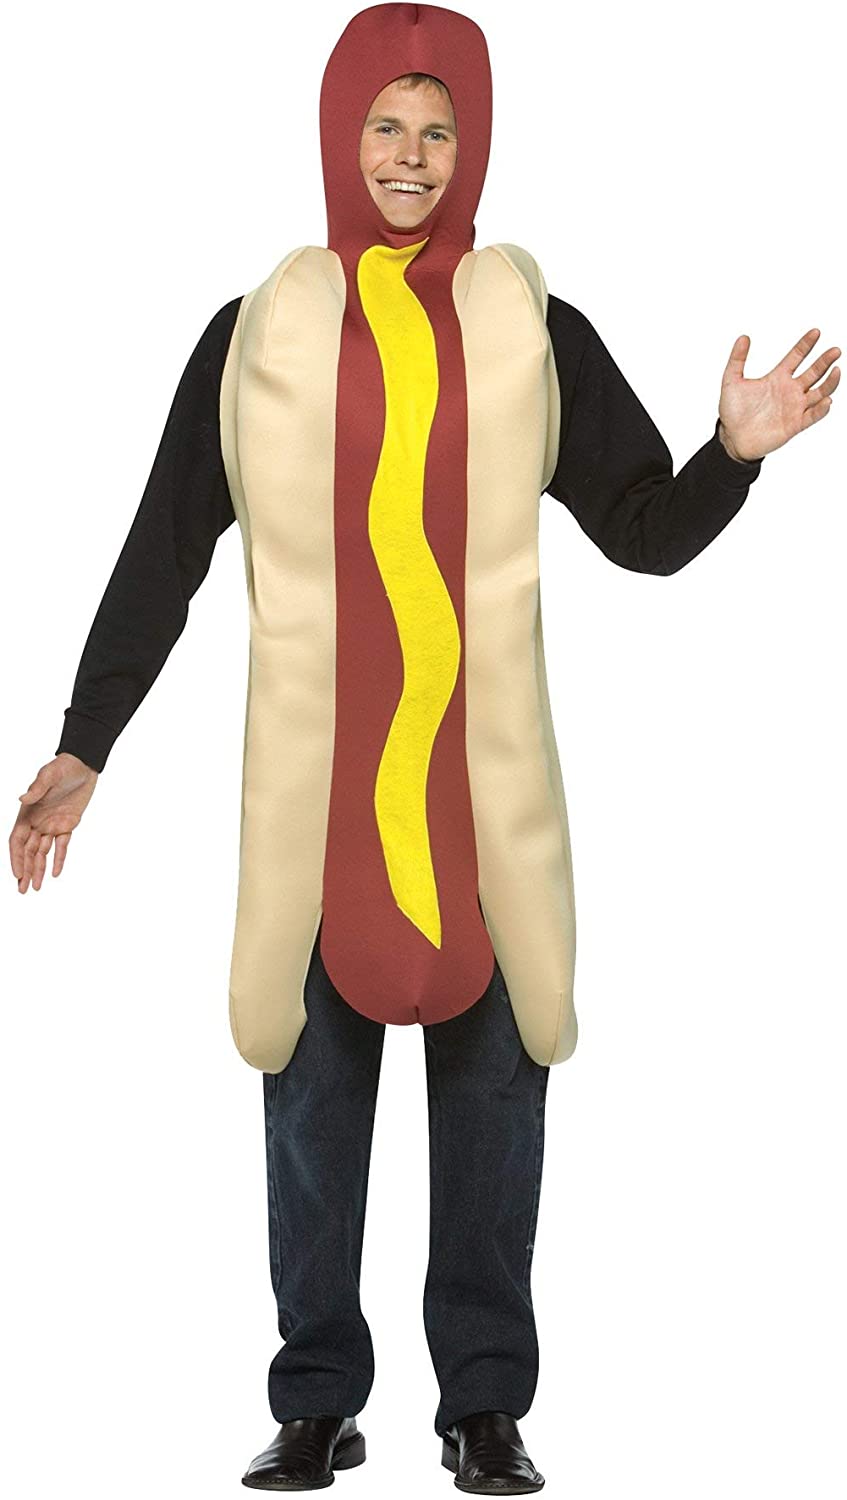 Hot-dogs légers pour adultes